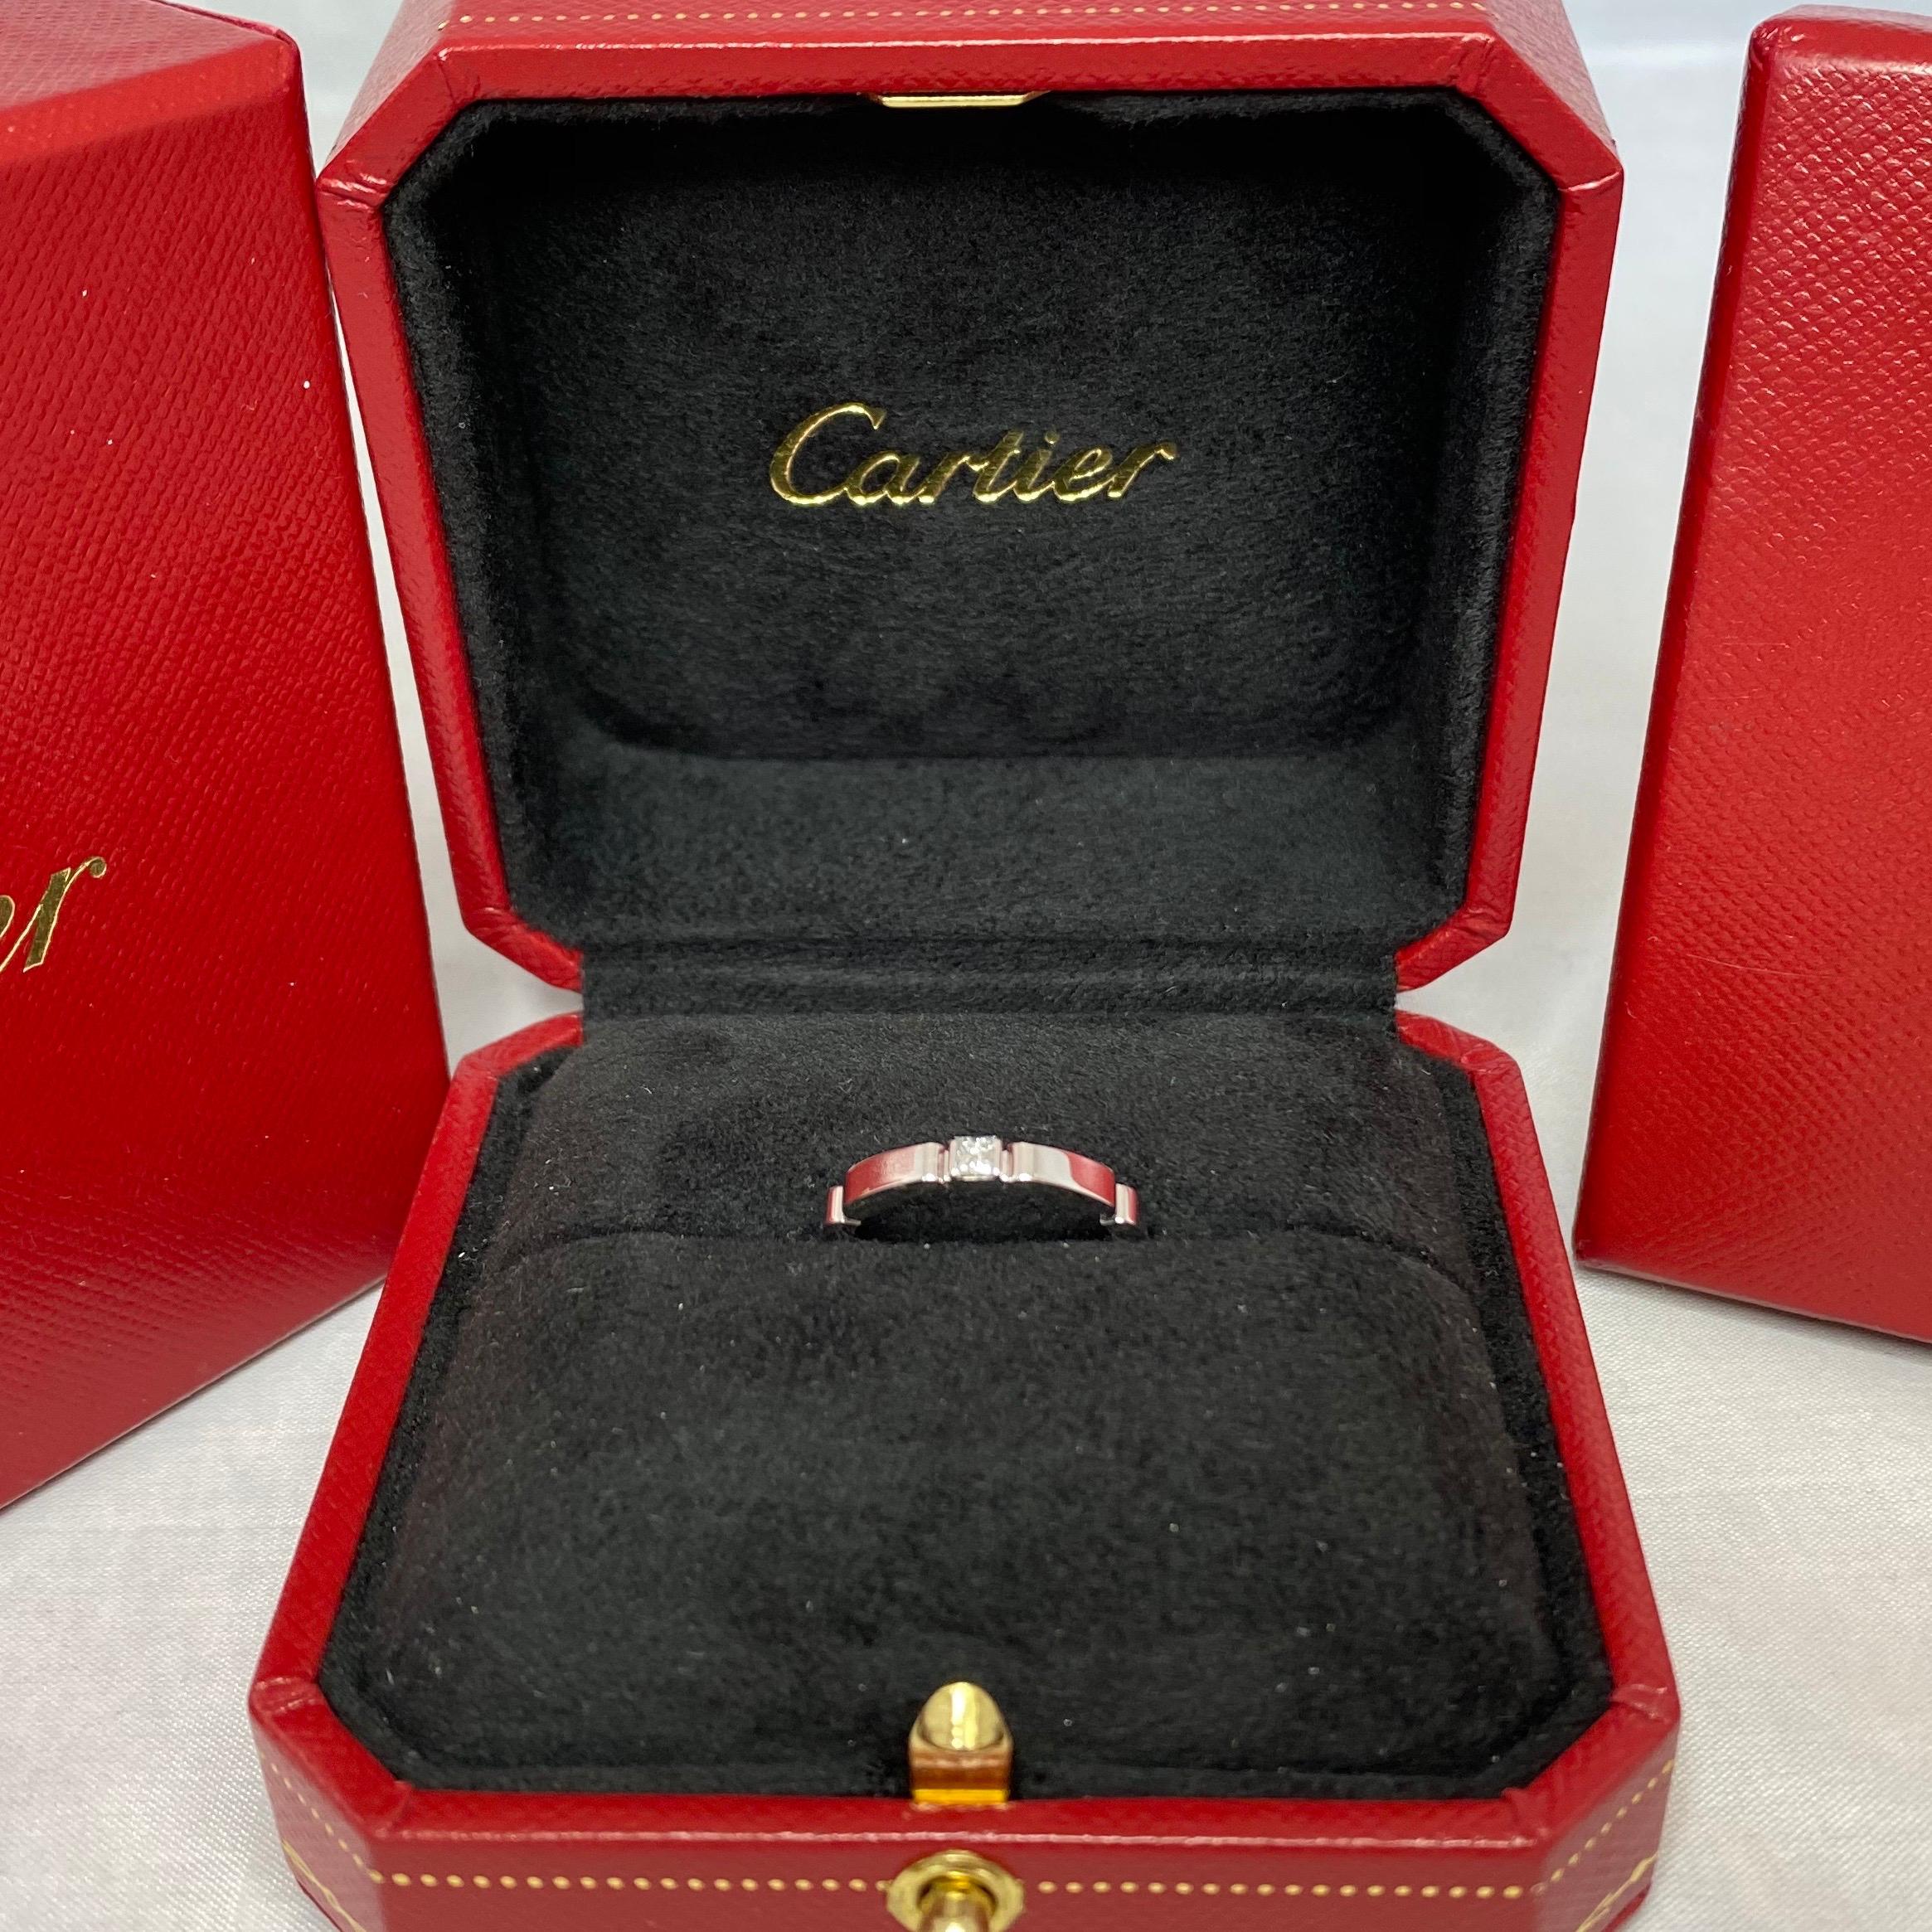 Cartier Maillon Panthere18k White Gold Princess Cut Diamond Band Ring In Cartier Box.

Magnifique bague en or blanc avec un diamant de taille princesse de 2,5 mm Le diamant mesure 2,5 mm (environ 0,10ct). Les maisons de haute joaillerie comme